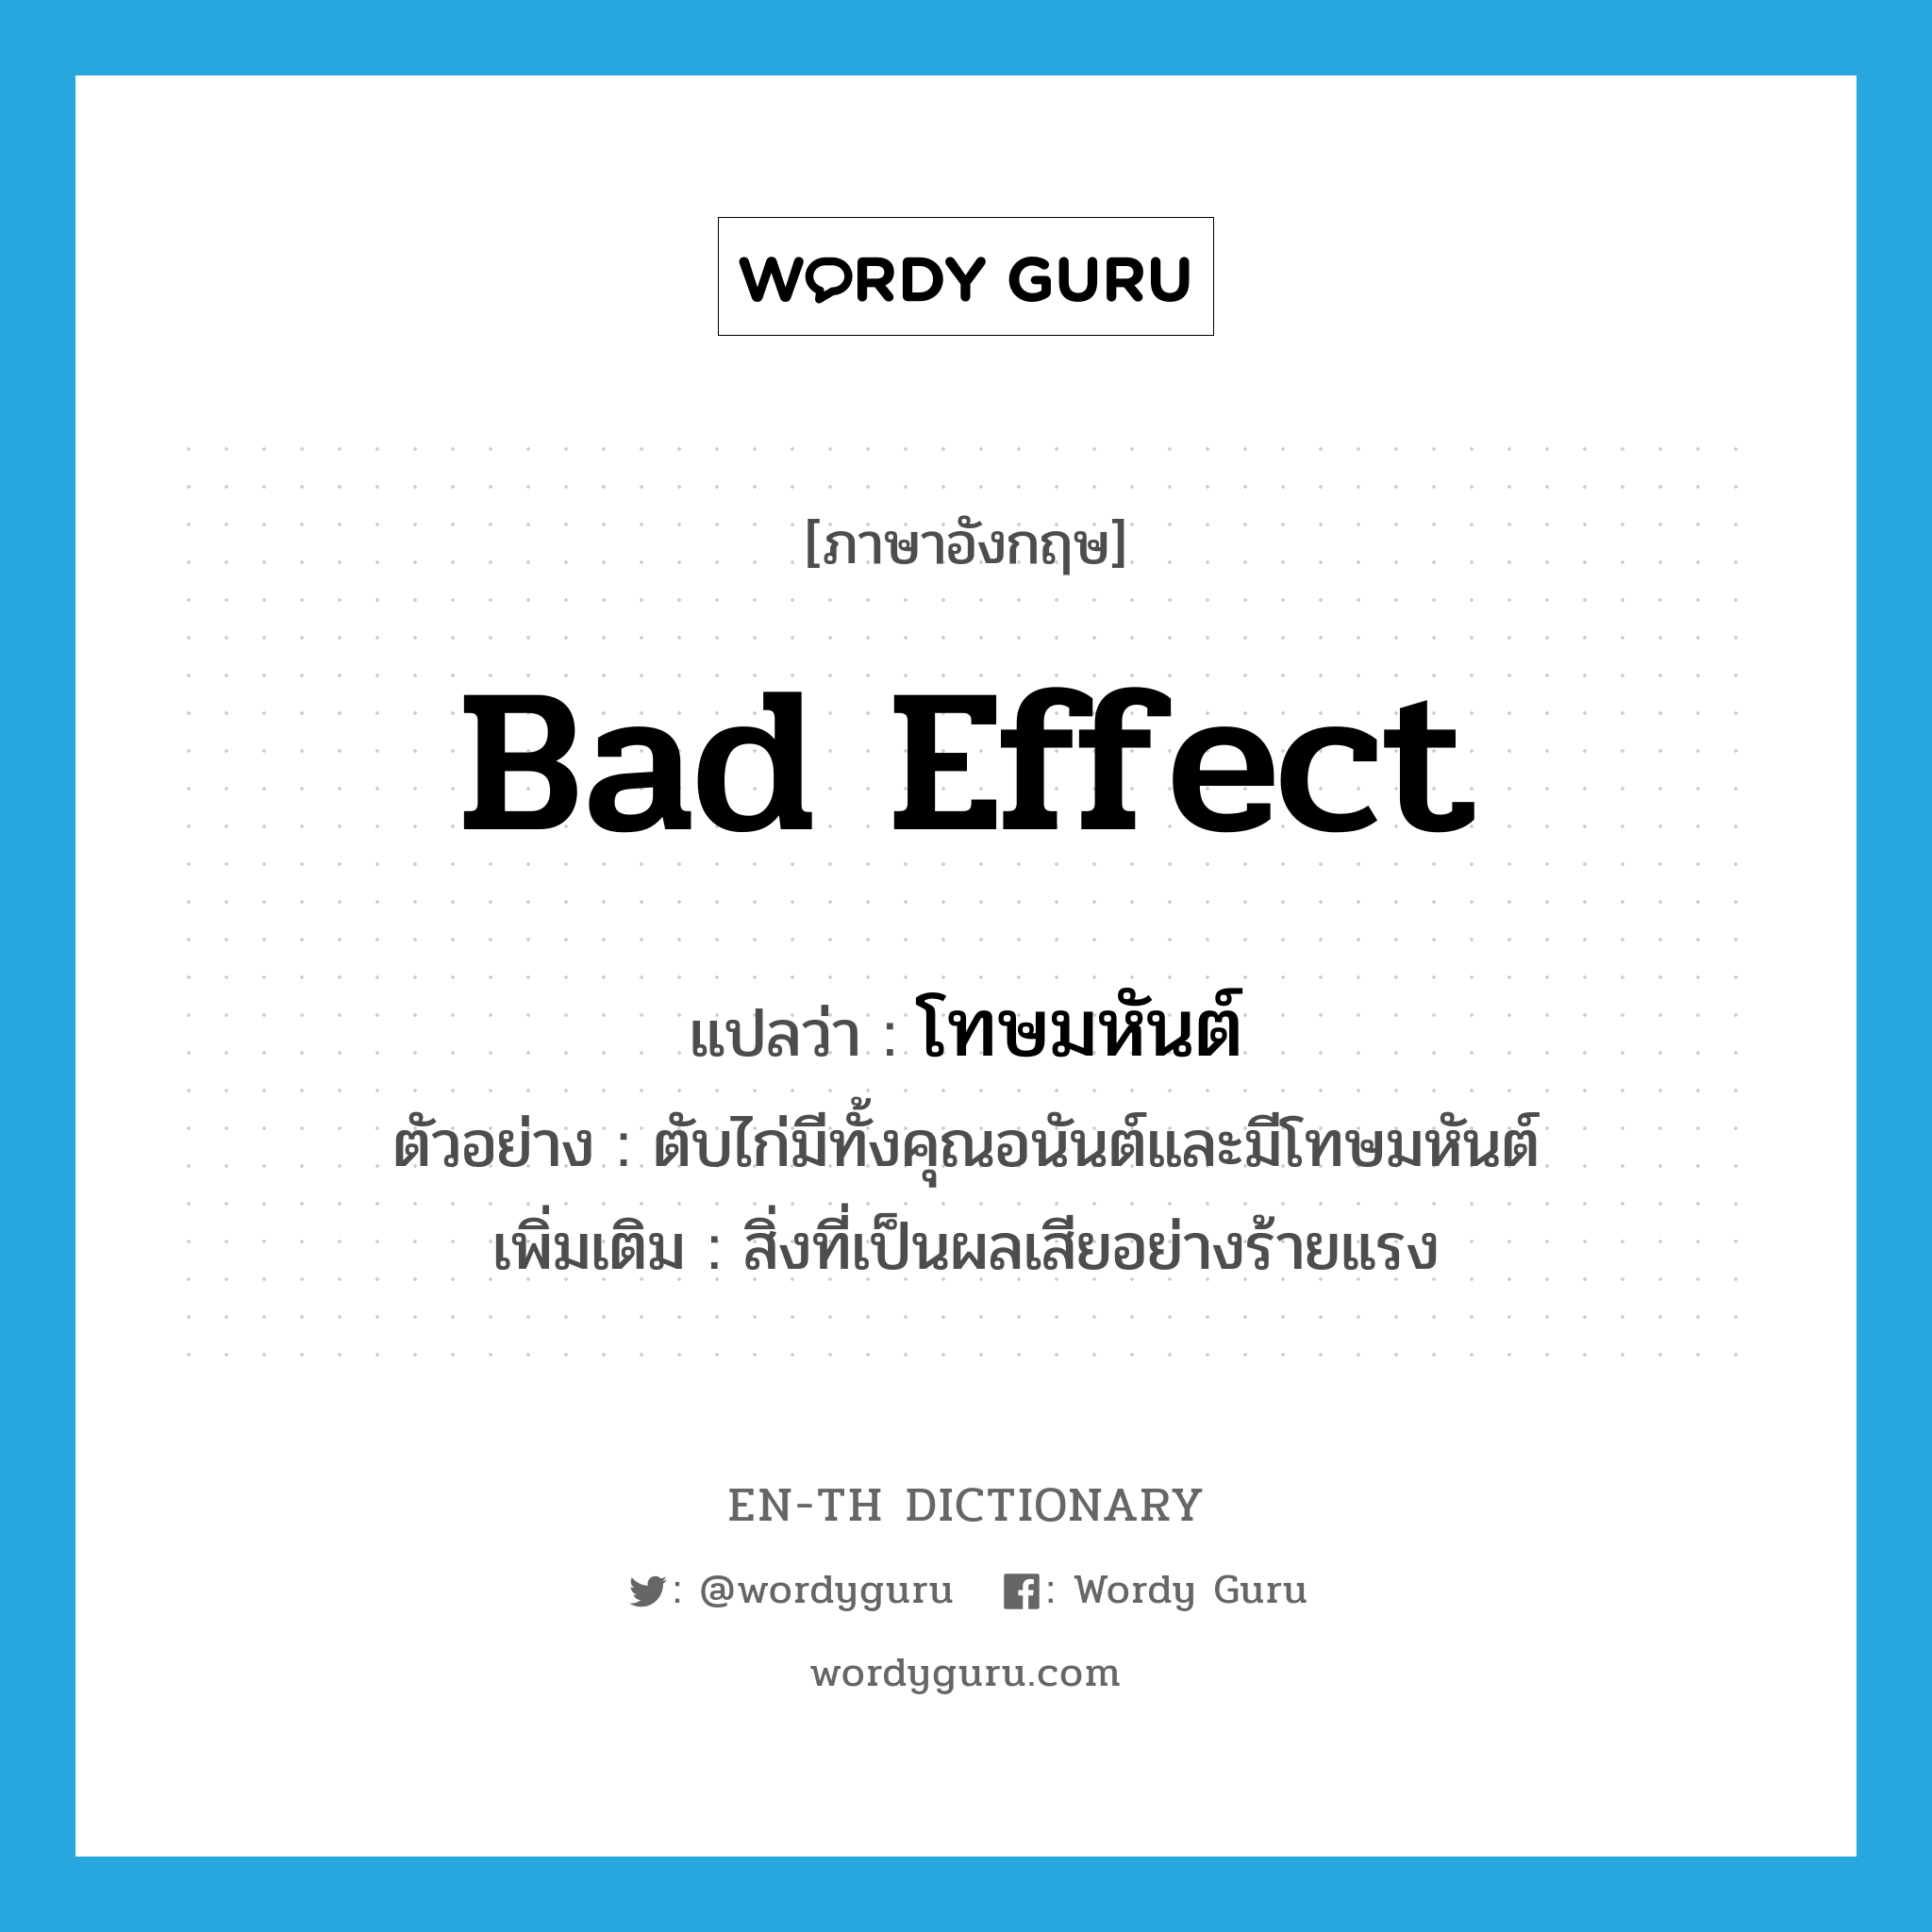 bad effect แปลว่า?, คำศัพท์ภาษาอังกฤษ bad effect แปลว่า โทษมหันต์ ประเภท N ตัวอย่าง ตับไก่มีทั้งคุณอนันต์และมีโทษมหันต์ เพิ่มเติม สิ่งที่เป็นผลเสียอย่างร้ายแรง หมวด N